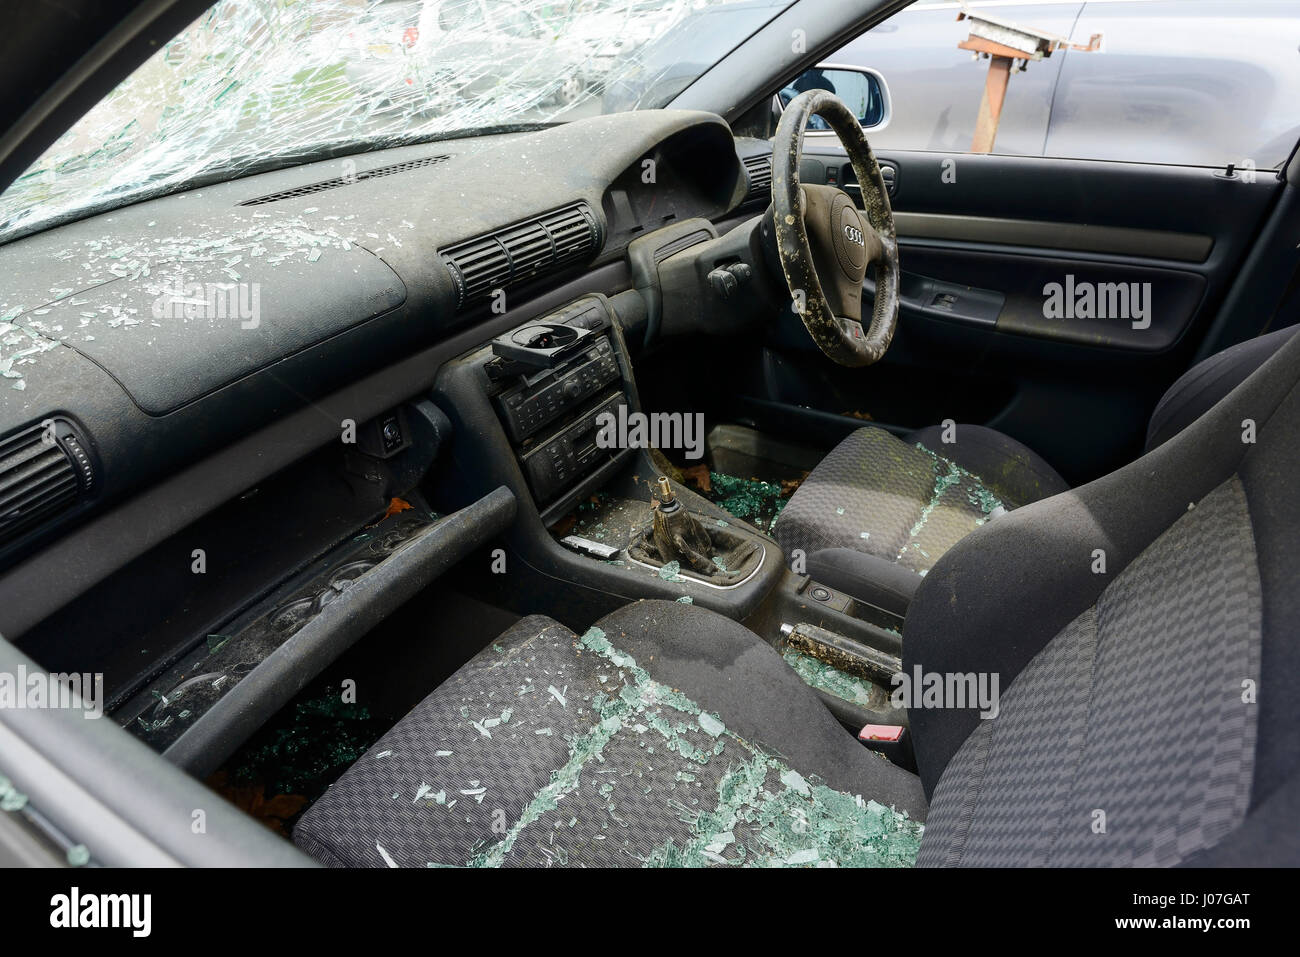 Abandonné et vandalisé l'intérieur de voiture Banque D'Images